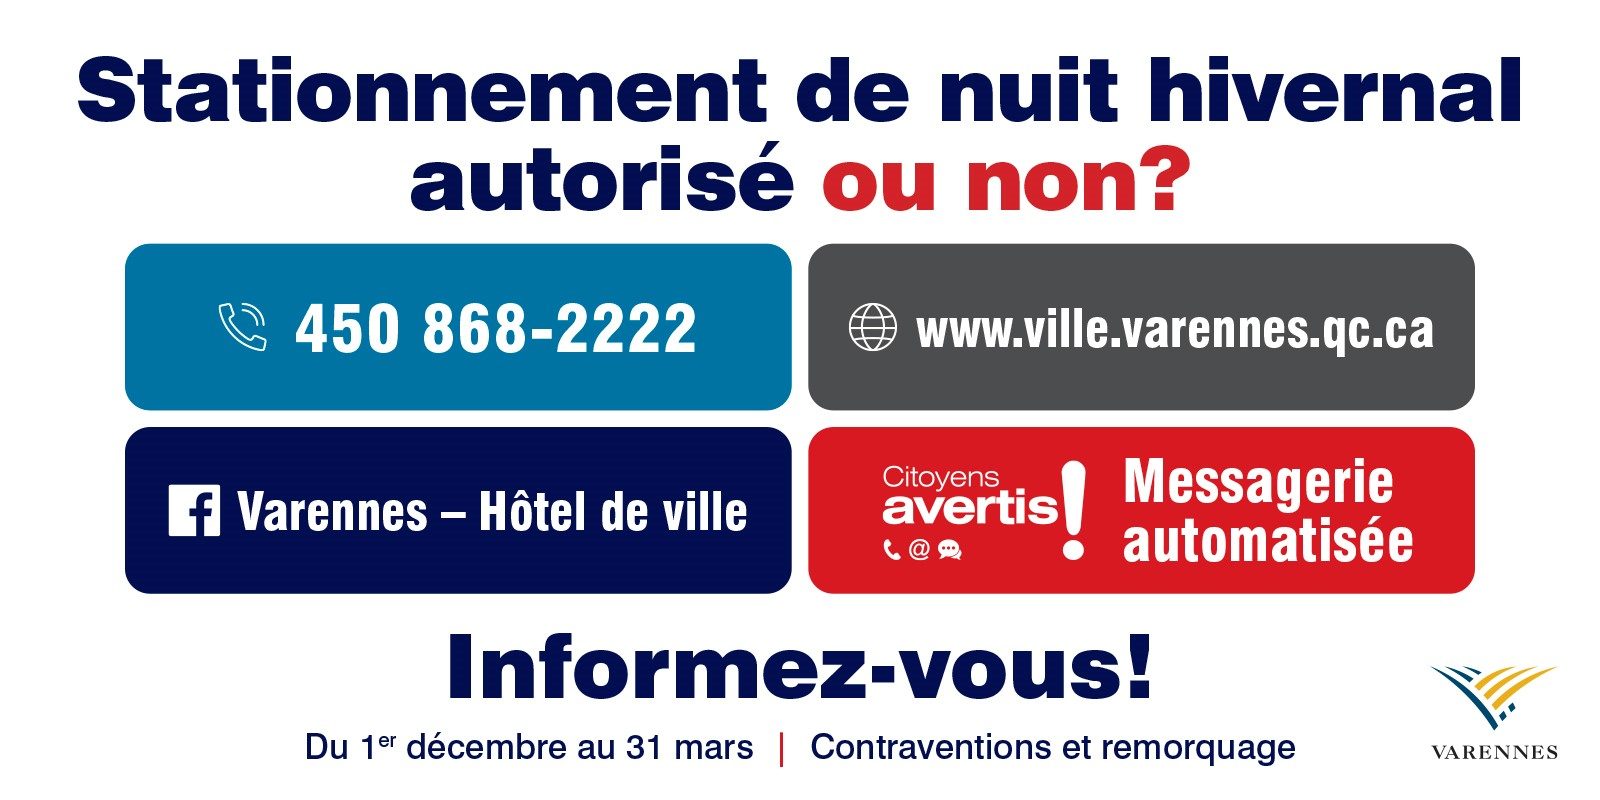 Stationnement de nuit en saison hivernale à Varennes: les citoyens doivent s’informer à partir du 1er décembre